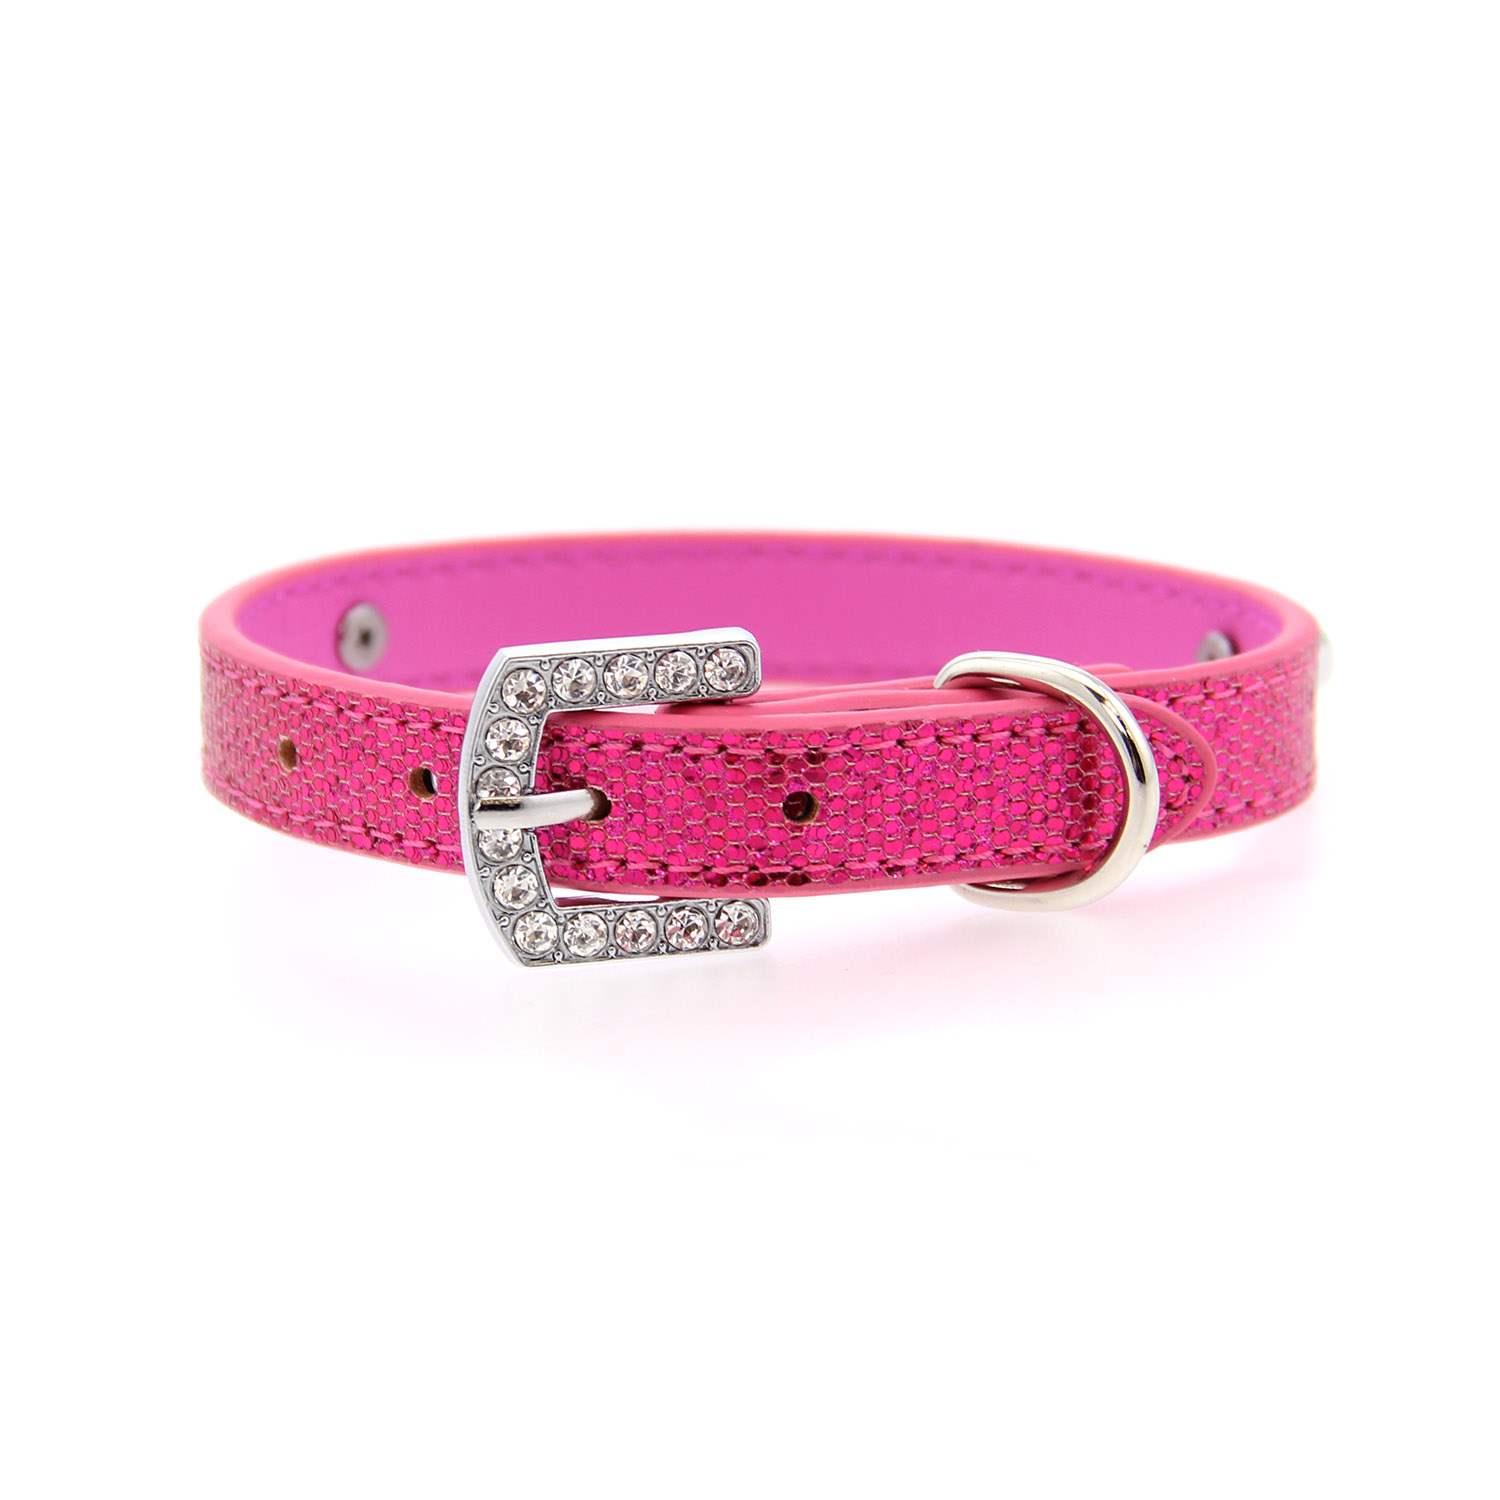 Parisian Pet Paillette Dog Collar - Pink